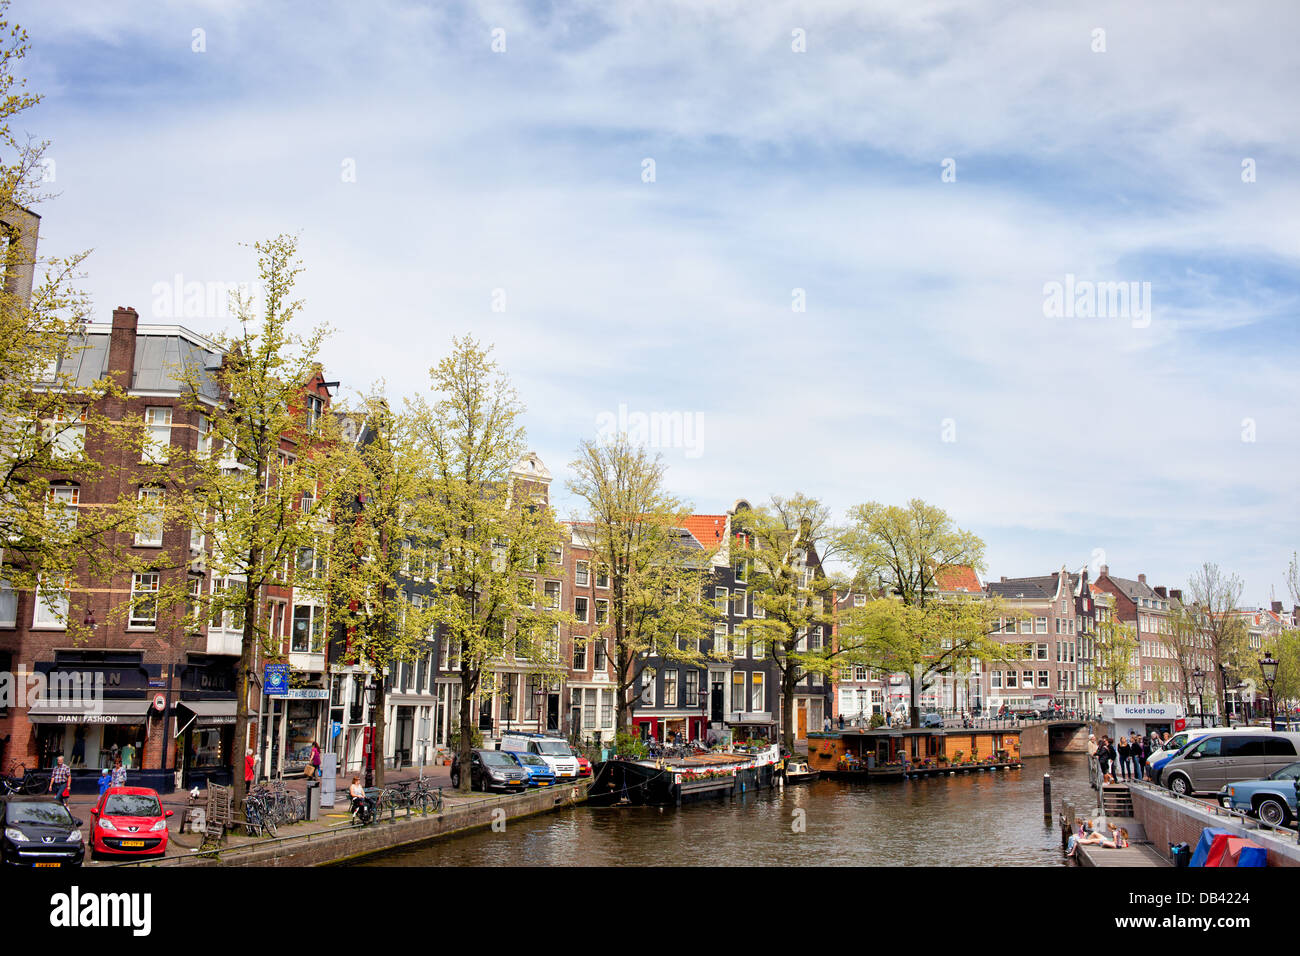 Ville d'Amsterdam cityscape, canal, maisons et bateaux, Pays-Bas, au nord de la Hollande. Banque D'Images